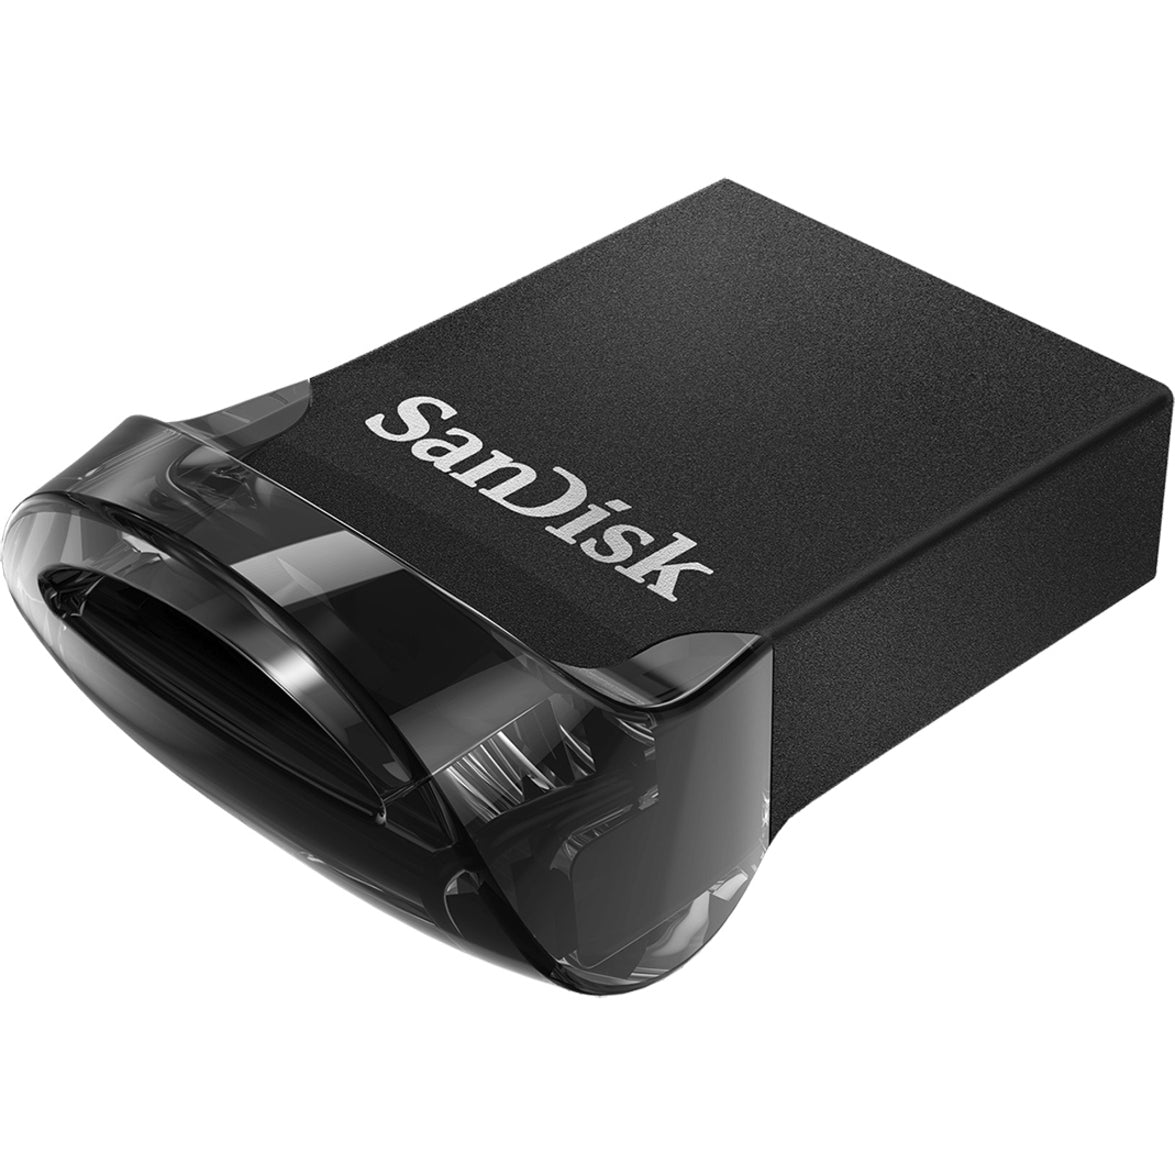 SanDisk SDCZ430-512G-A46 Ultra Fit USB 3.1 Flash Drive 512GB Solución de almacenamiento de datos de alta velocidad  Marca: SanDisk